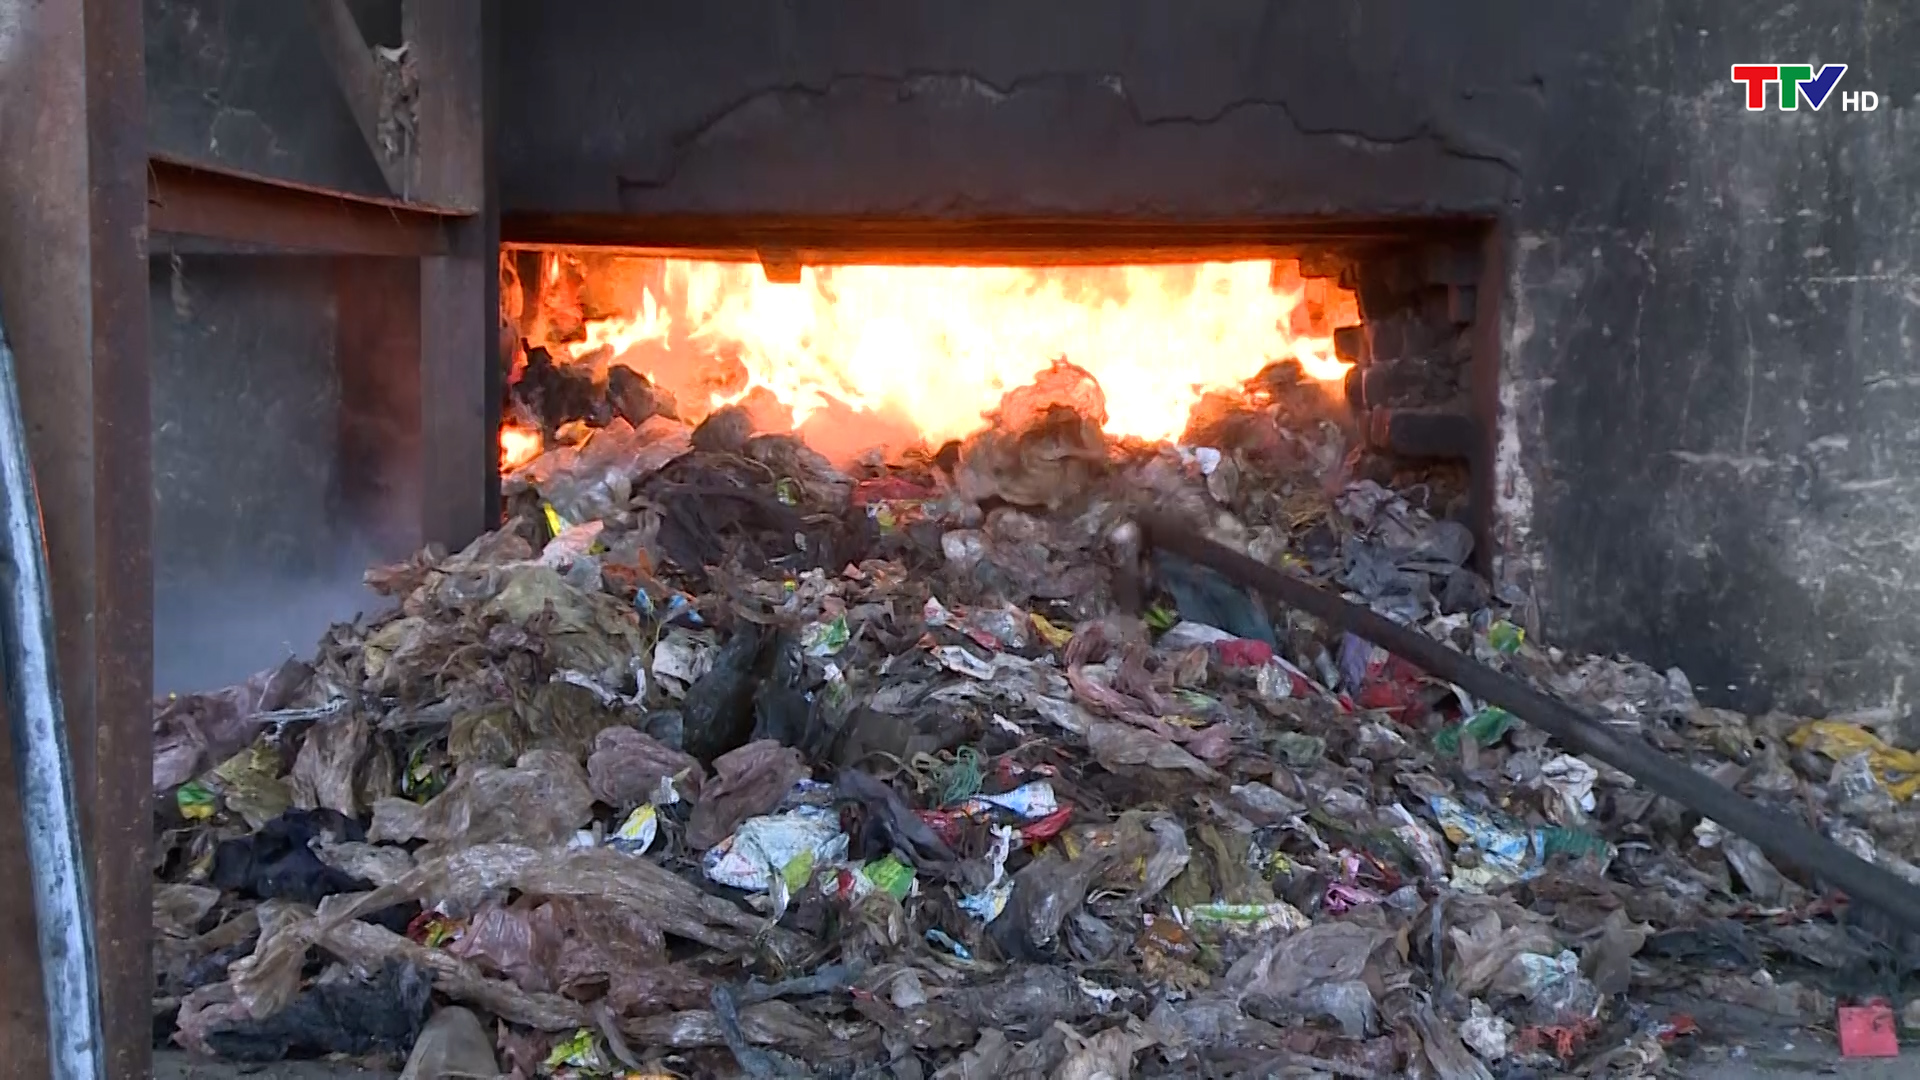 Hiệu quả xử lý rác thải bằng công nghệ đốt ở huyện Yên Định  - Ảnh 1.